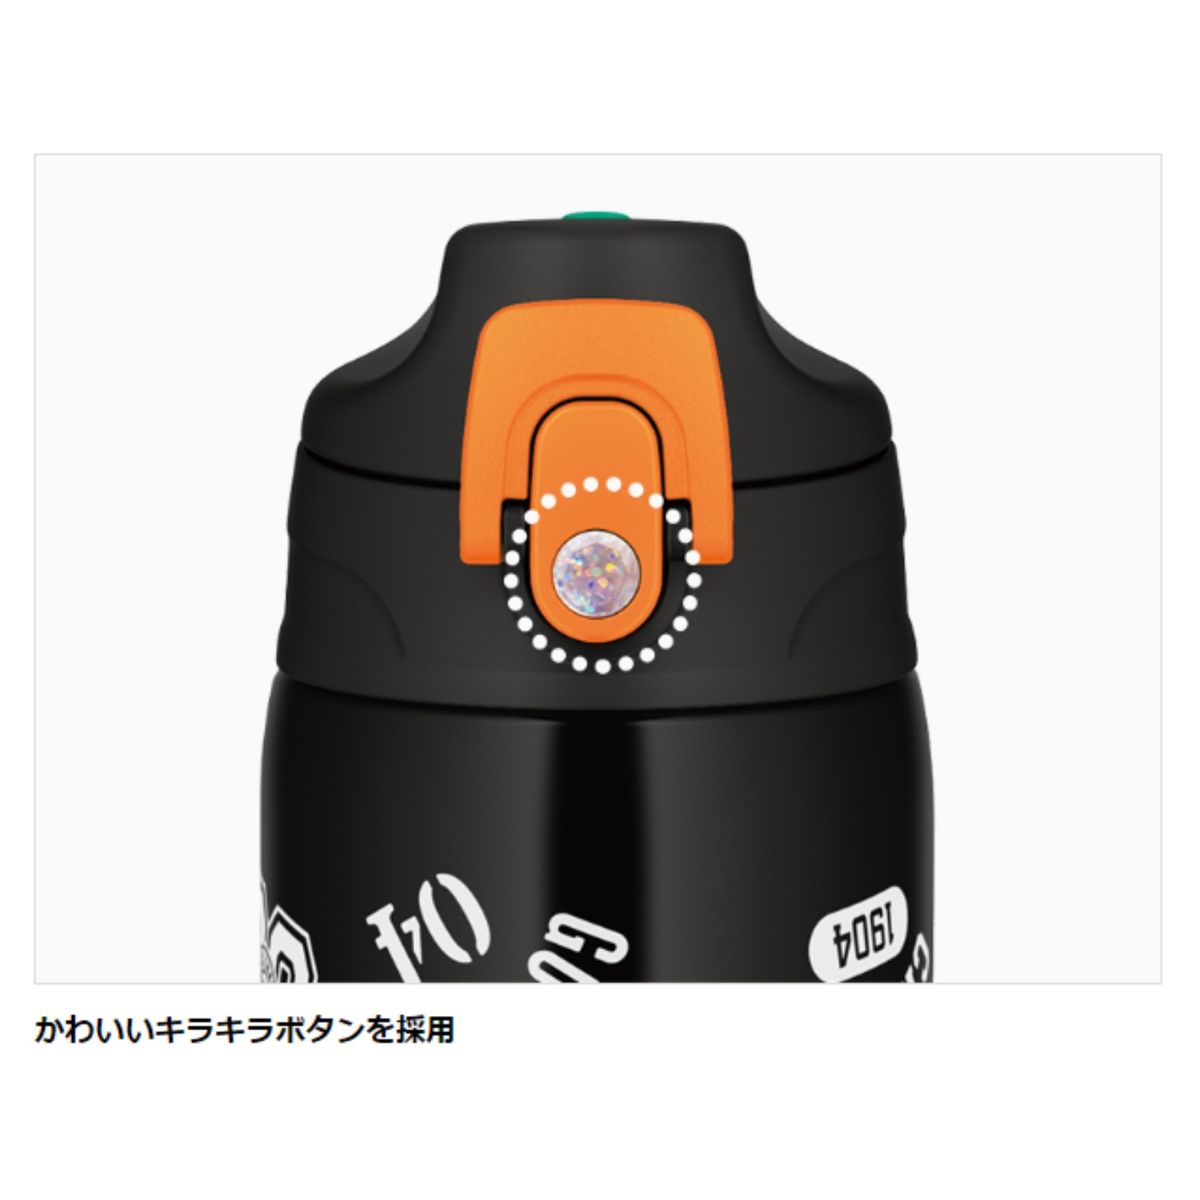 THERMOS 水筒 真空断熱2ウェイボトル 0.6L/0.63L ブラックオレンジ